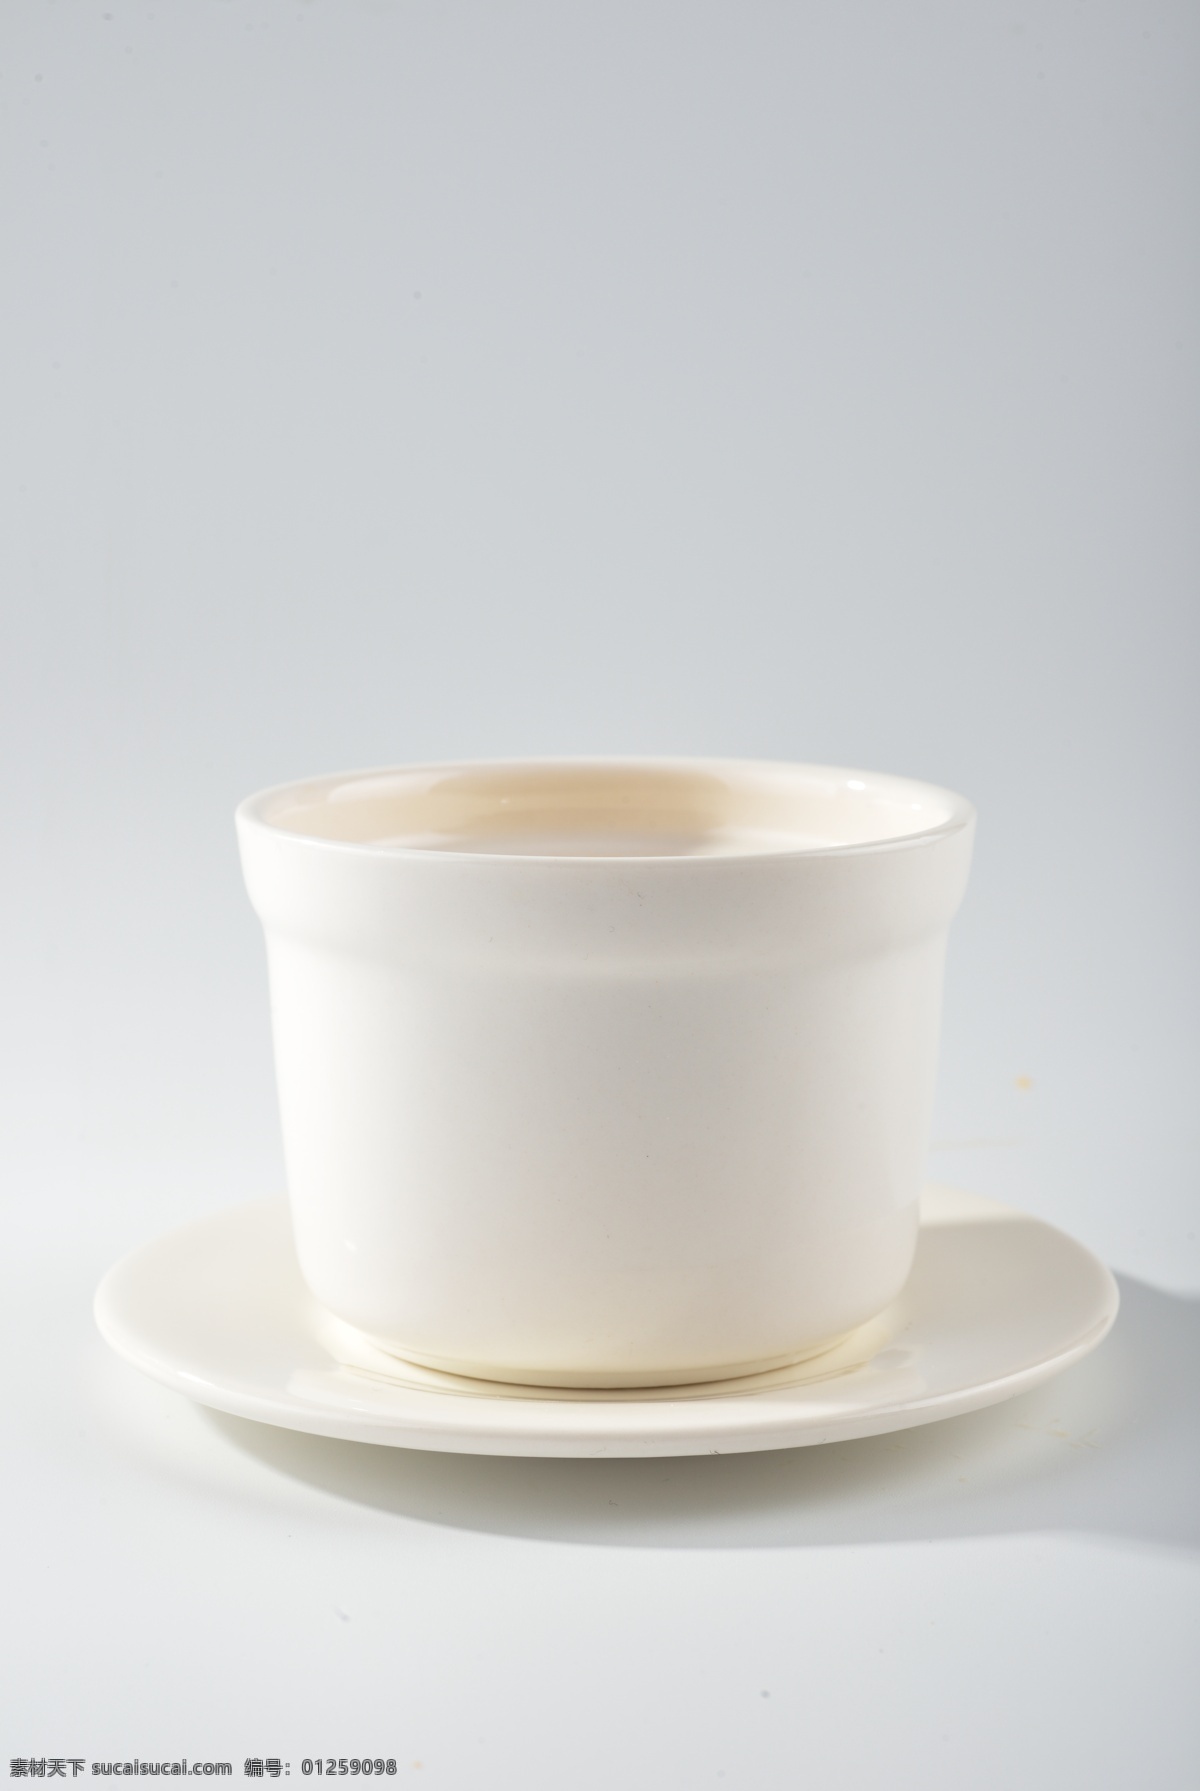 灰色 背景 下 汤 盅 瓷器 汤碗 汤盅 白瓷 瓷碗 瓷杯 白色 托盘 静物 灰背景